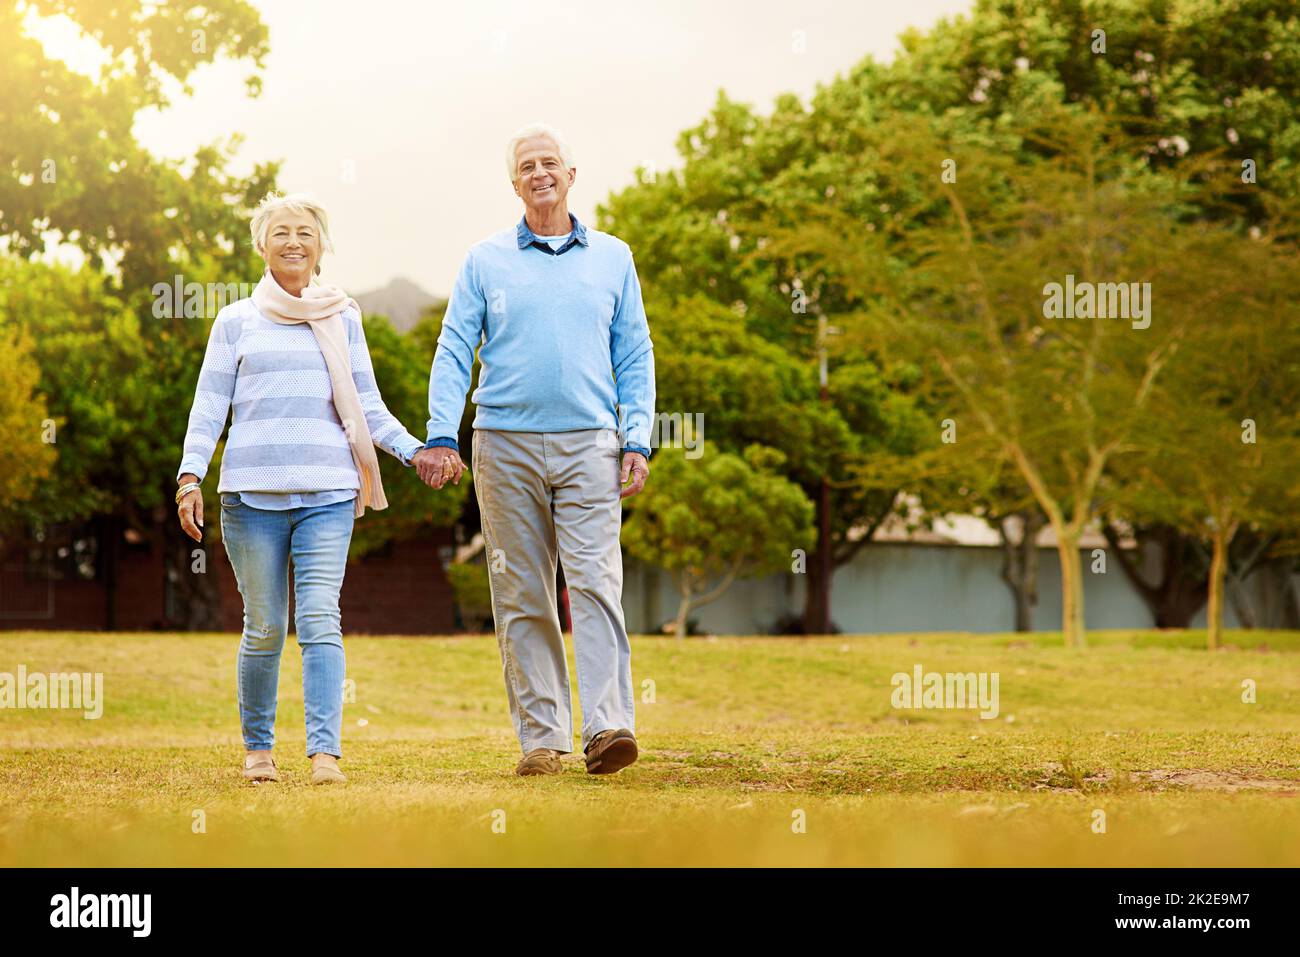 Passeggiando nel parco. Ritratto di una coppia anziana che si gode una passeggiata insieme in un parco. Foto Stock